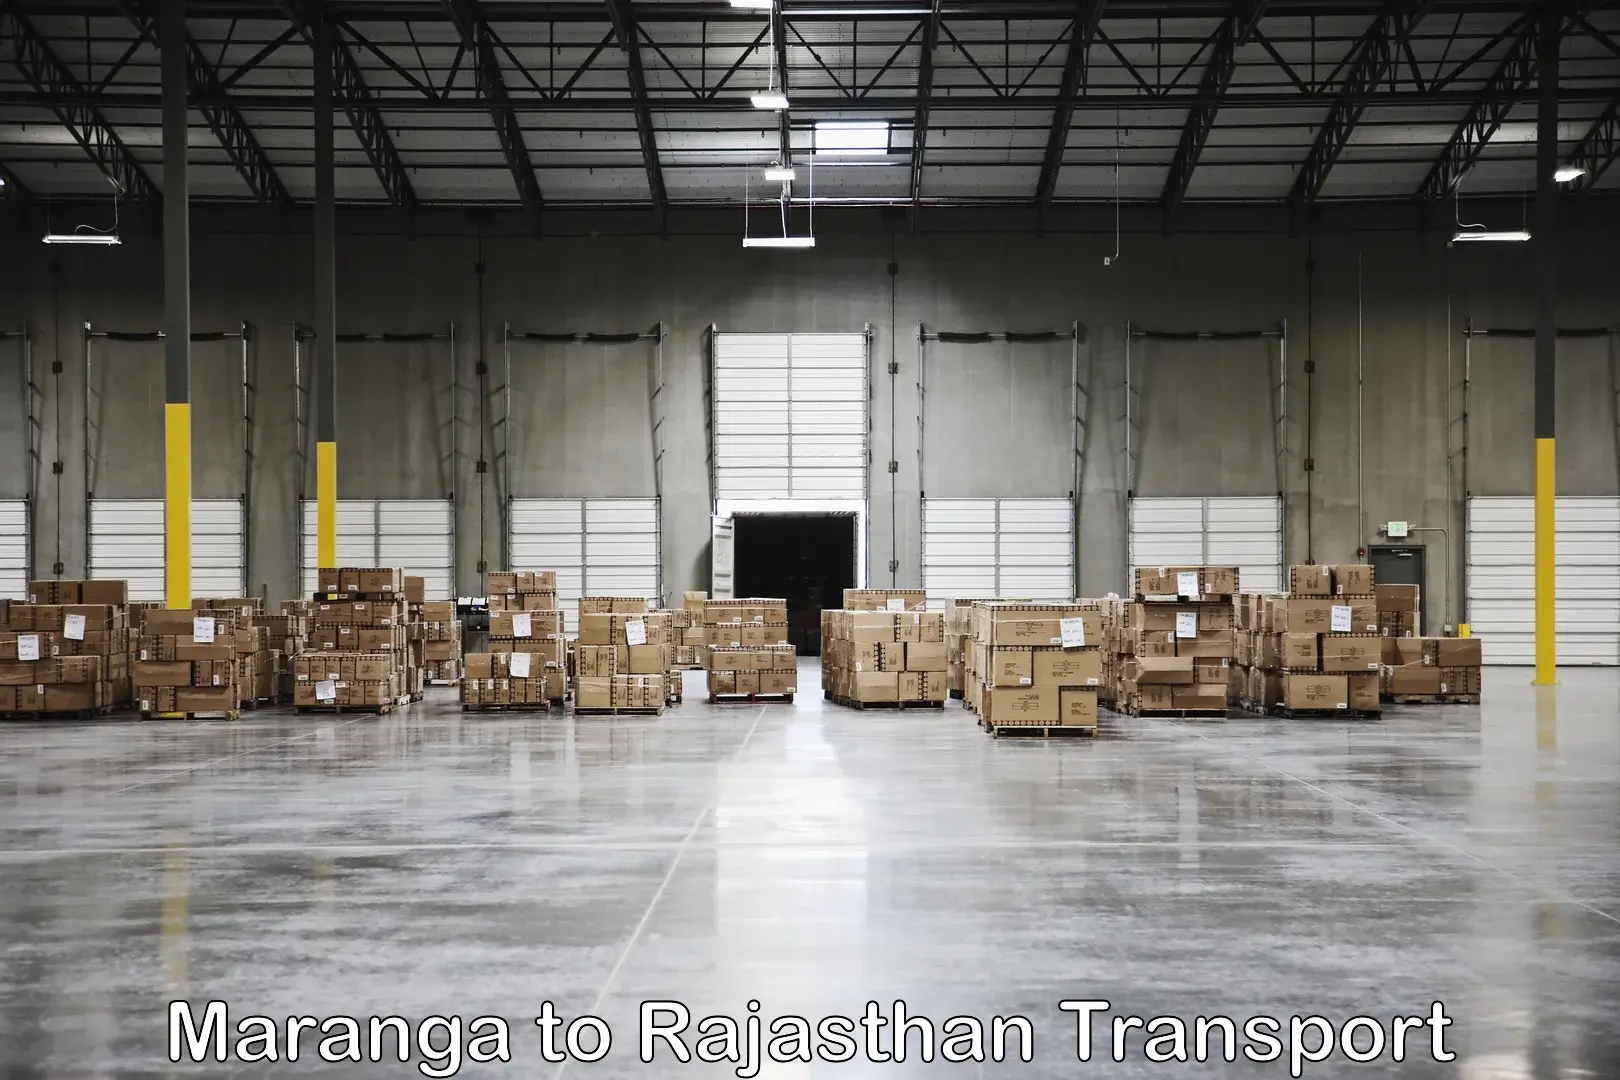 Furniture transport service Maranga to Nainwa